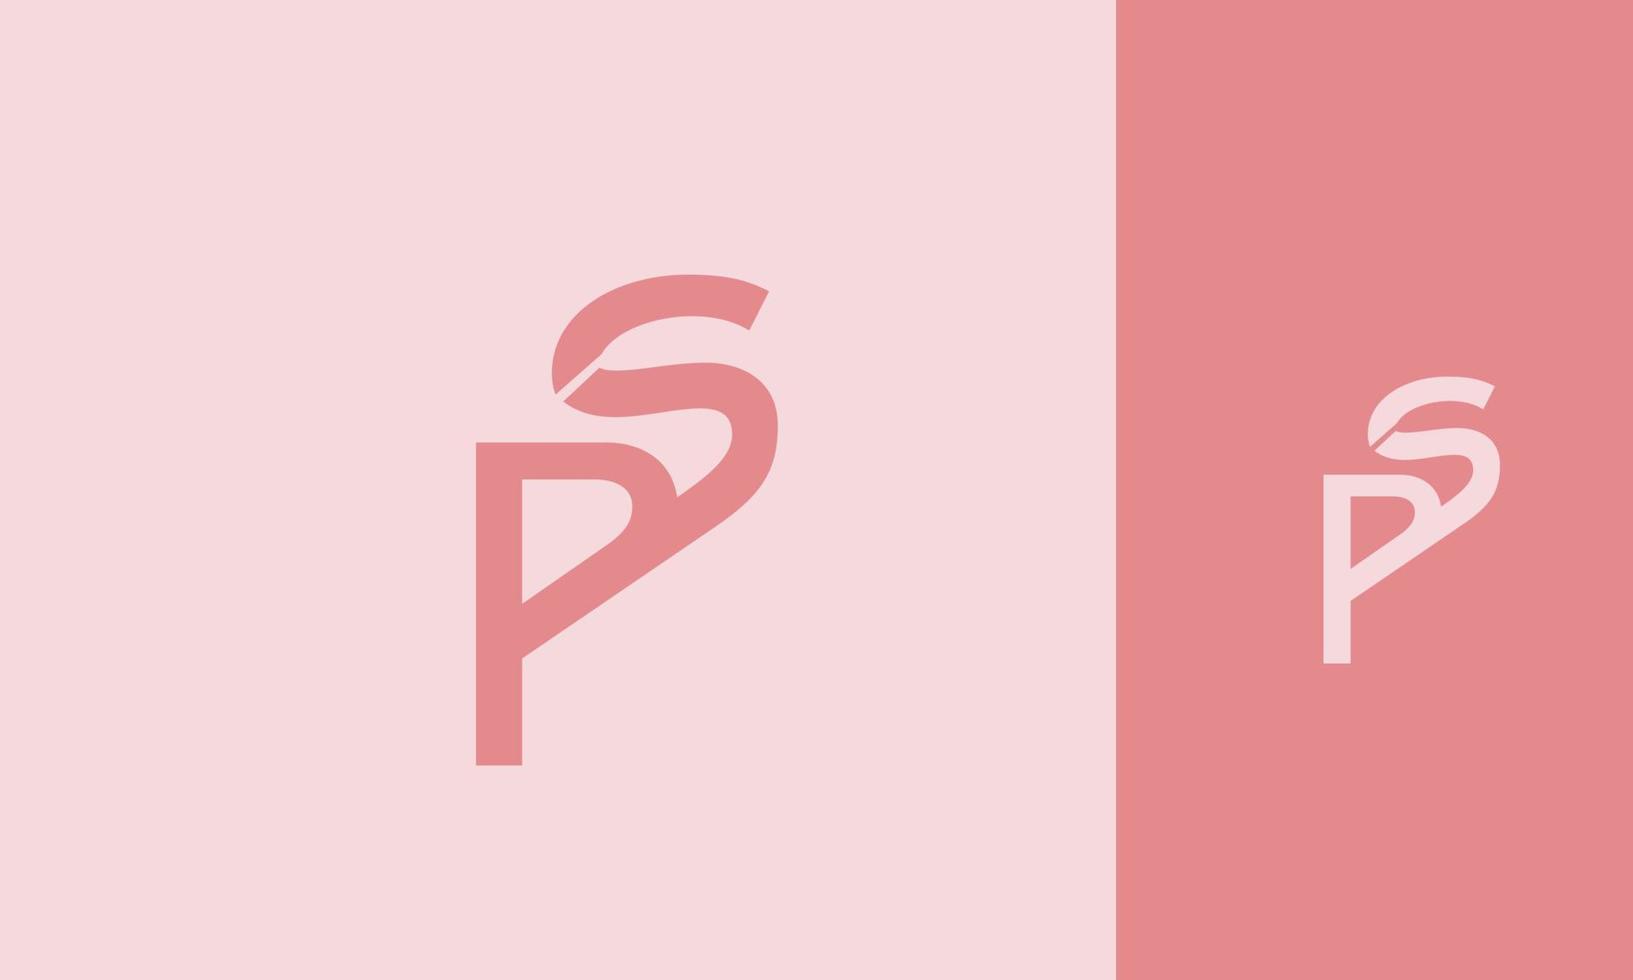 letras do alfabeto iniciais monograma logotipo ps, sp, p e s vetor